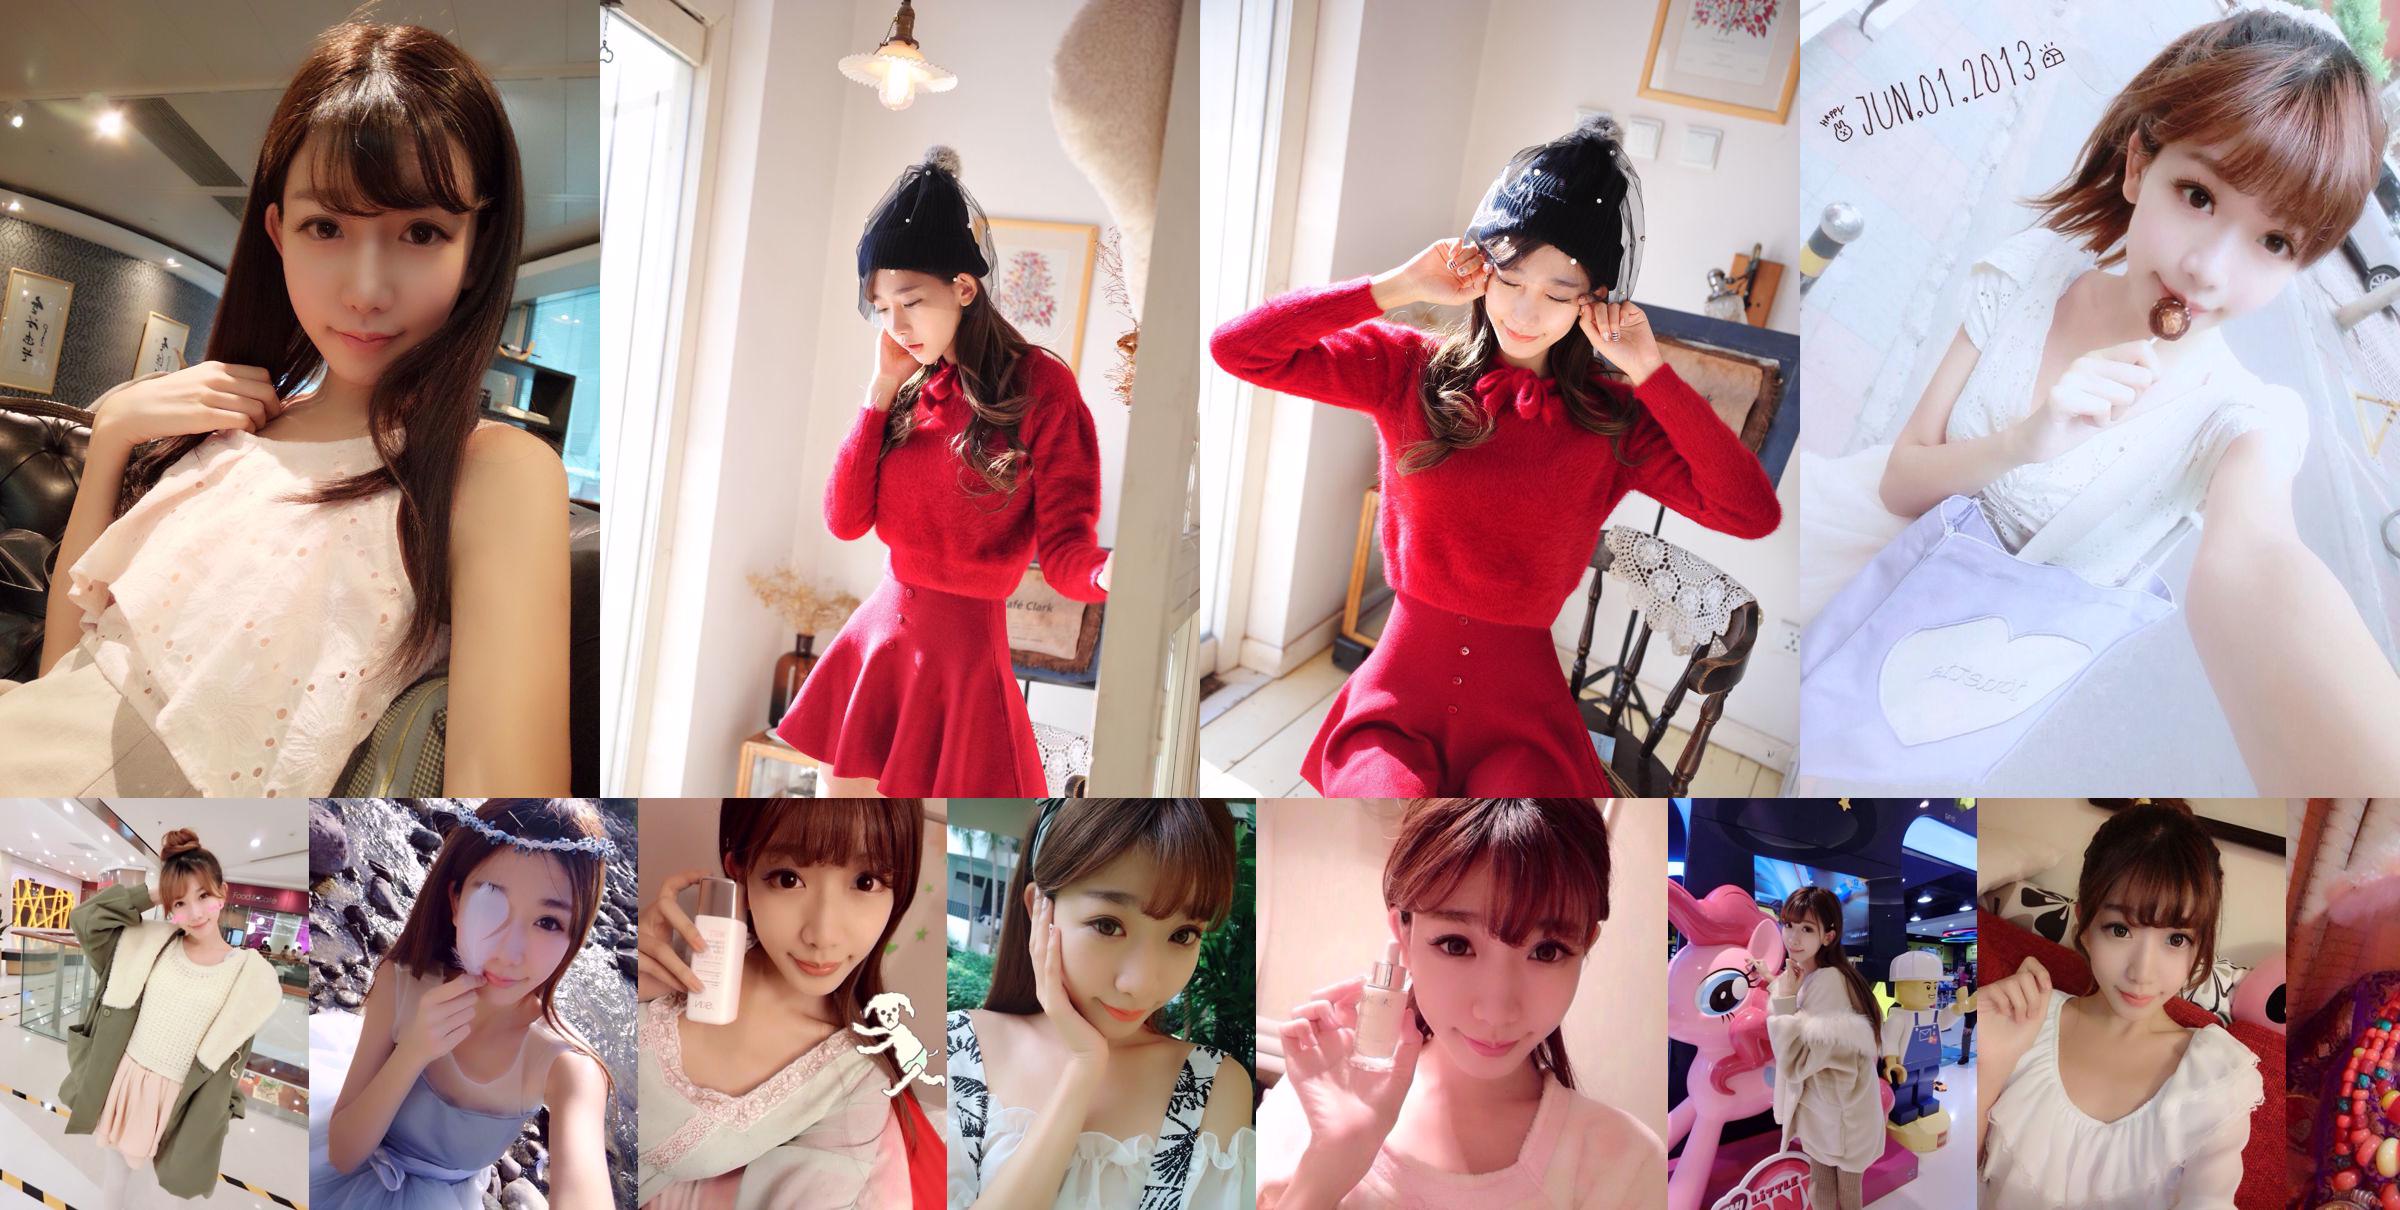 Тайваньская сестра интернет-знаменитости Чэнь Сяо "Weibo Selfie Pictures" Часть 1 Коллекция фотографий No.d6f4e7 Страница 3